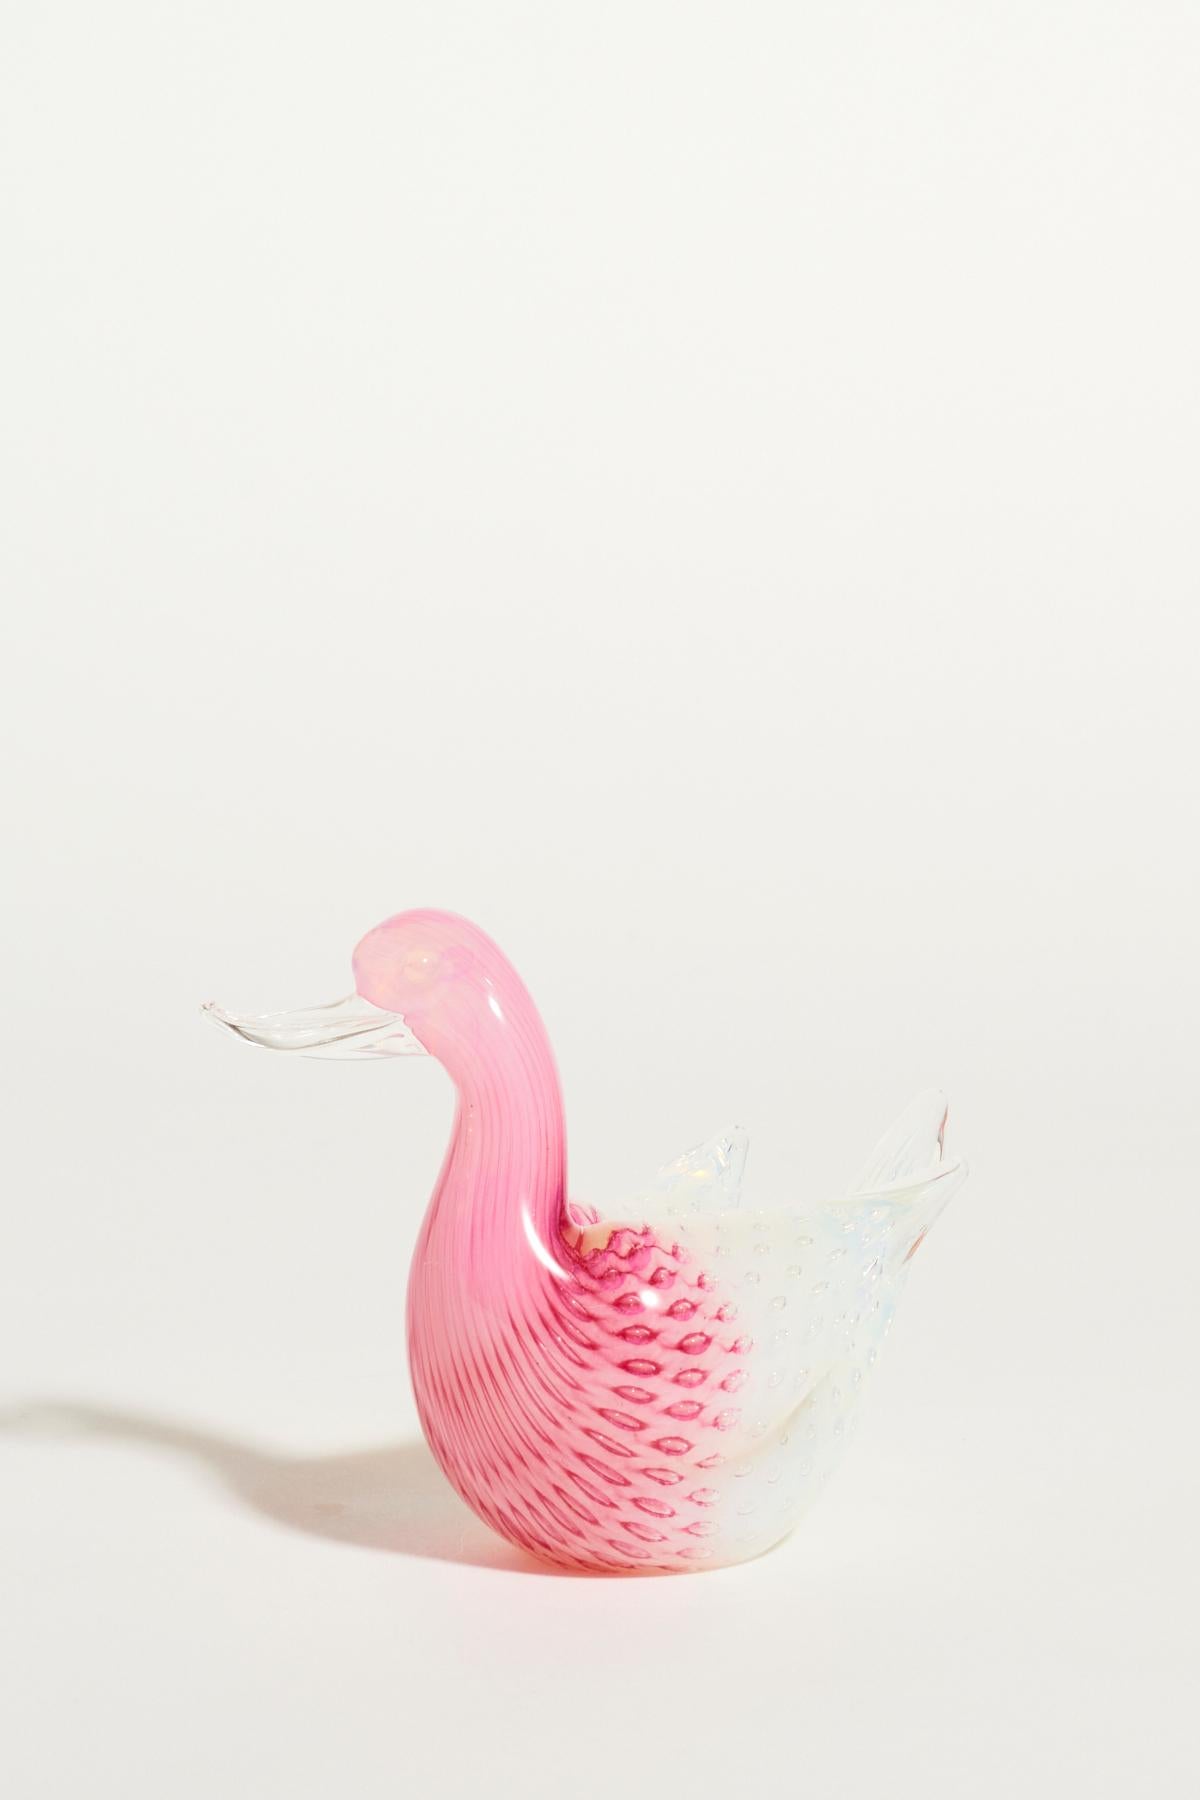 Italian pink and white Murano glass swan.